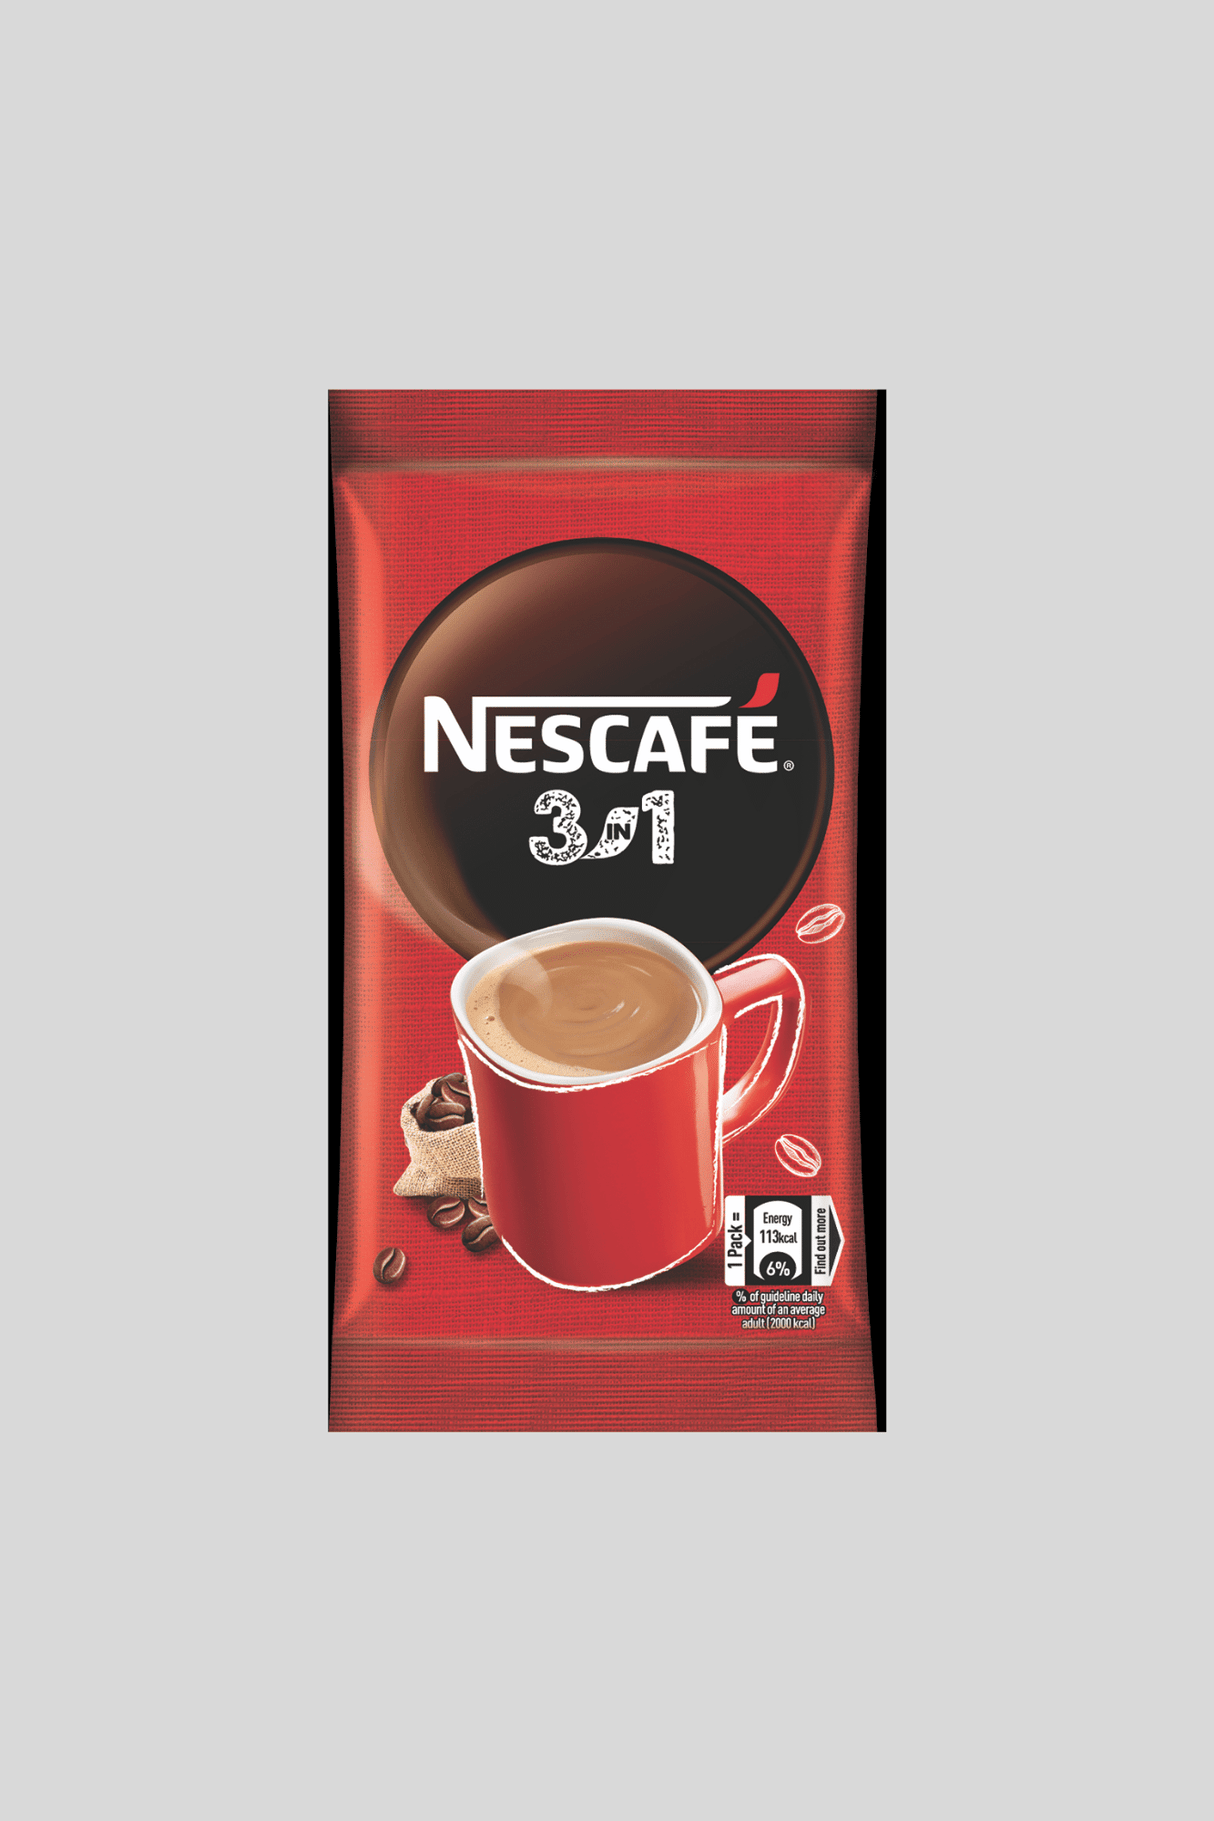 nescafe coffee 3in1 22g